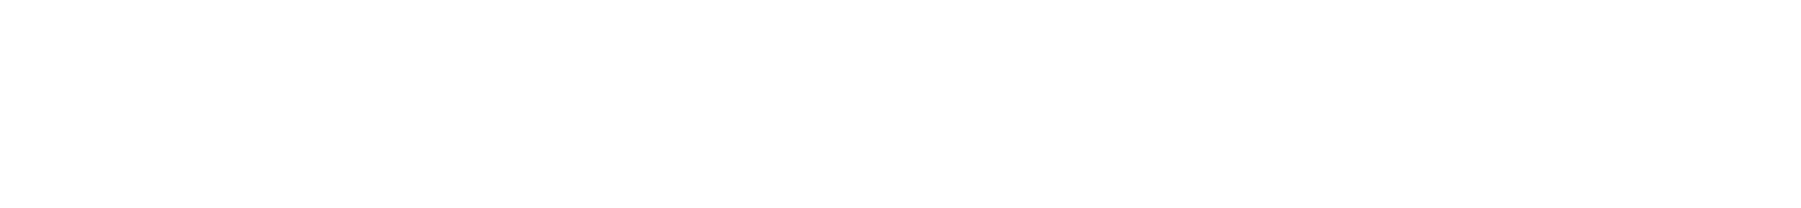 Help Centre AUS + NZ logo